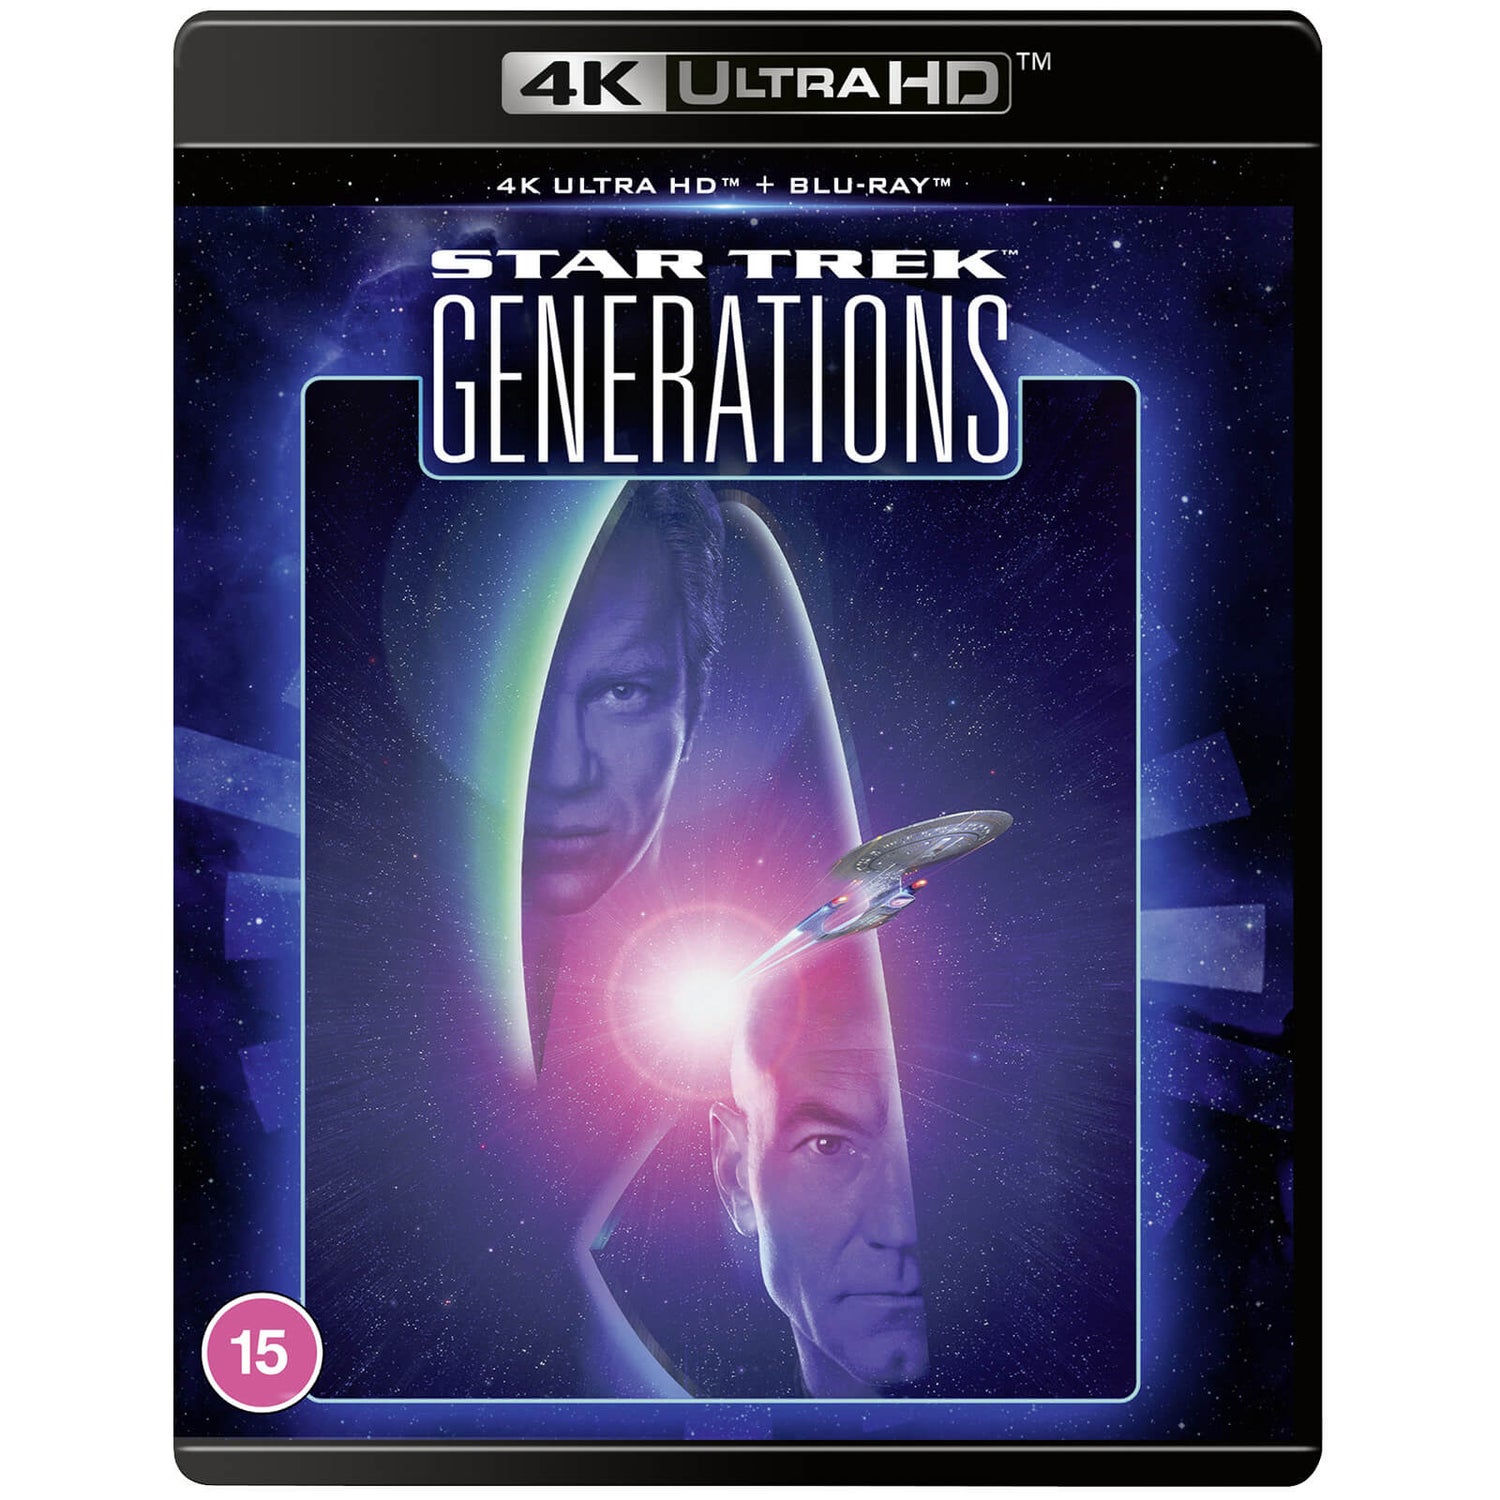 Star Trek VII: Generations 4K Ultra HD (includes Blu-ray)